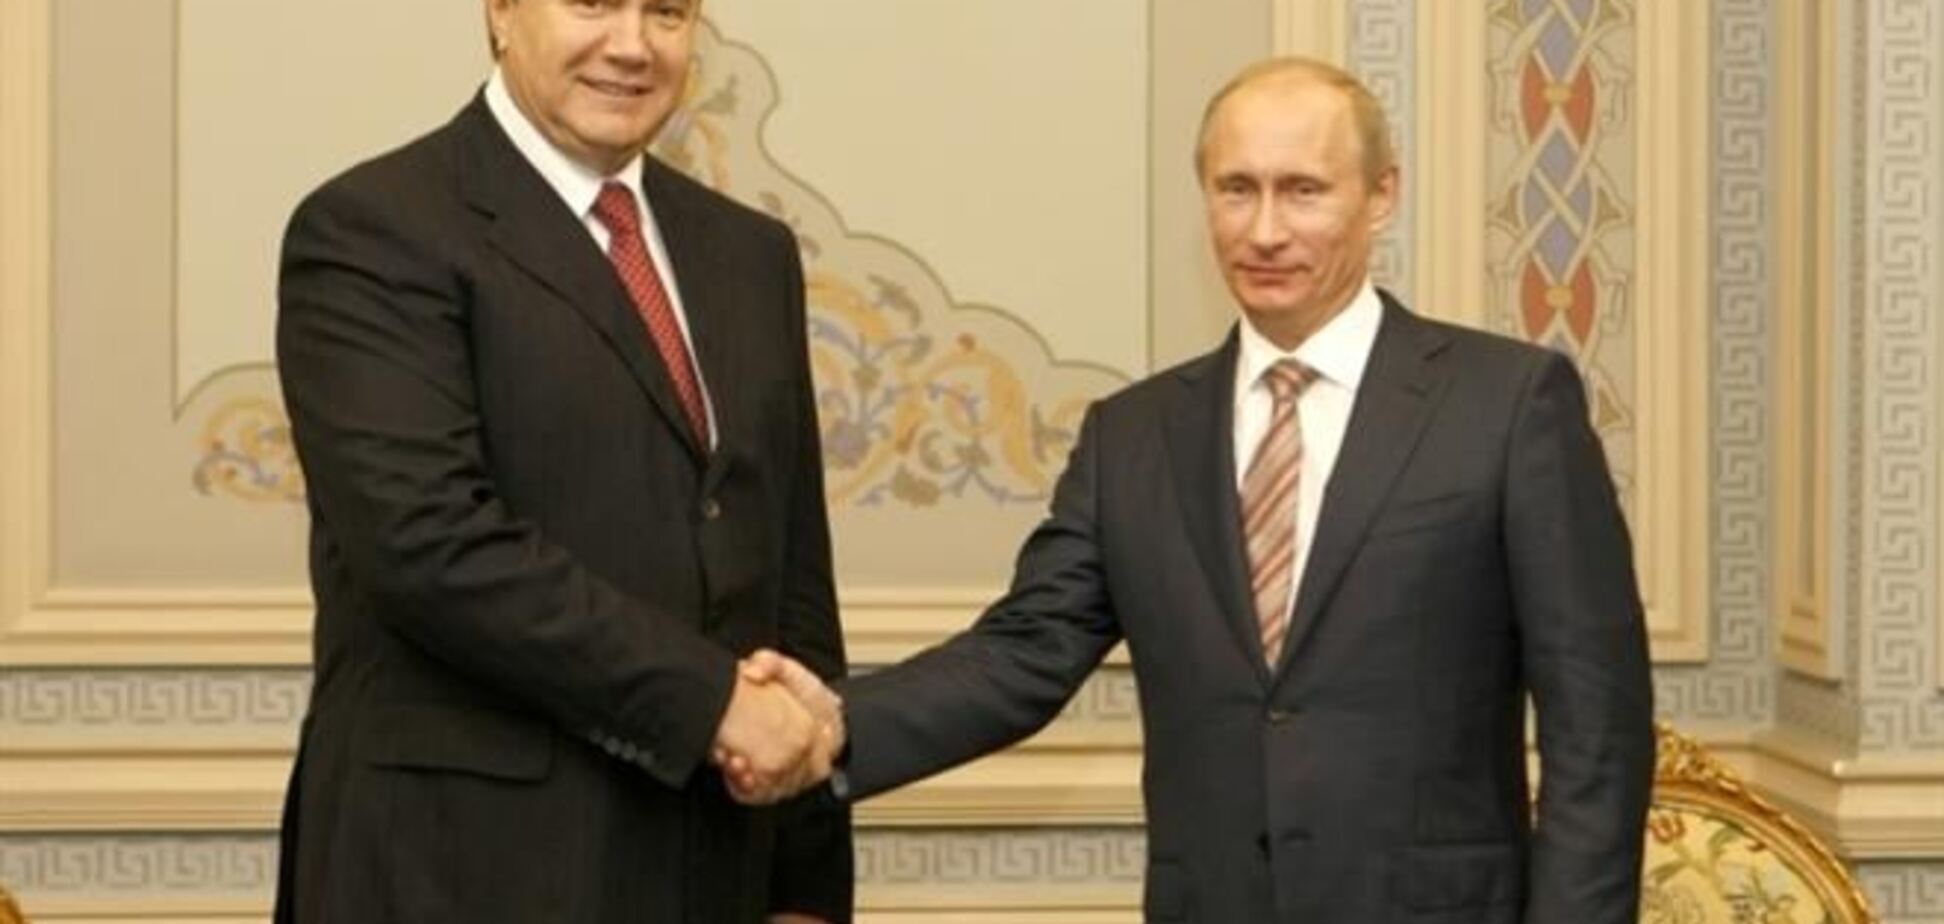 Прес-секретар Путіна підтвердив суботній візит Януковича до Москви